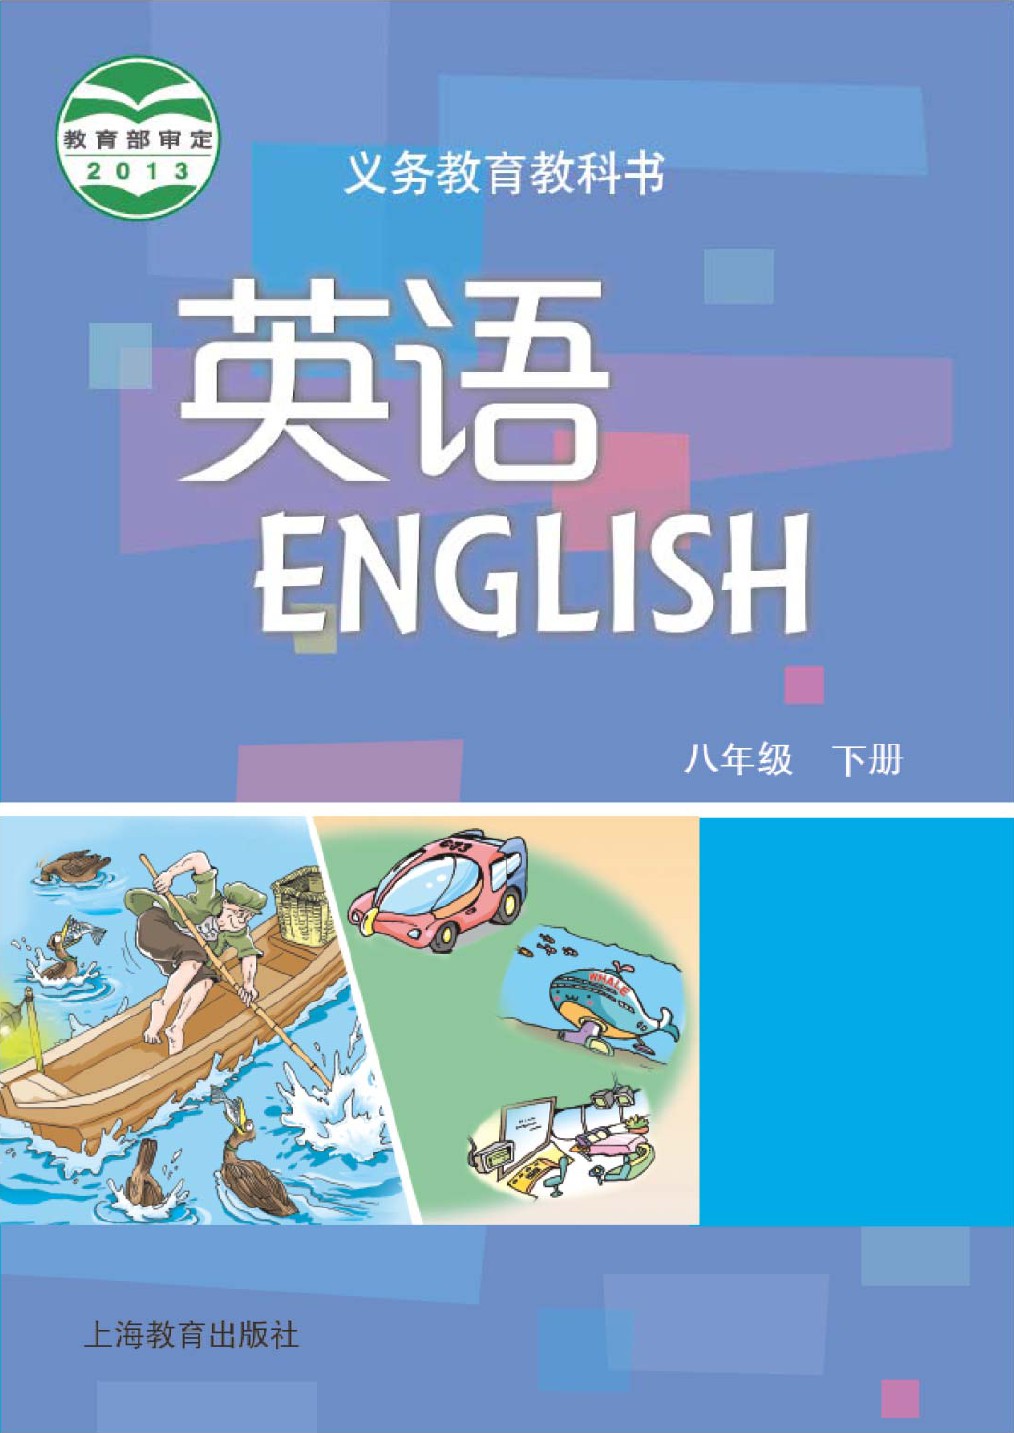 沪教版英语,语文电子课本